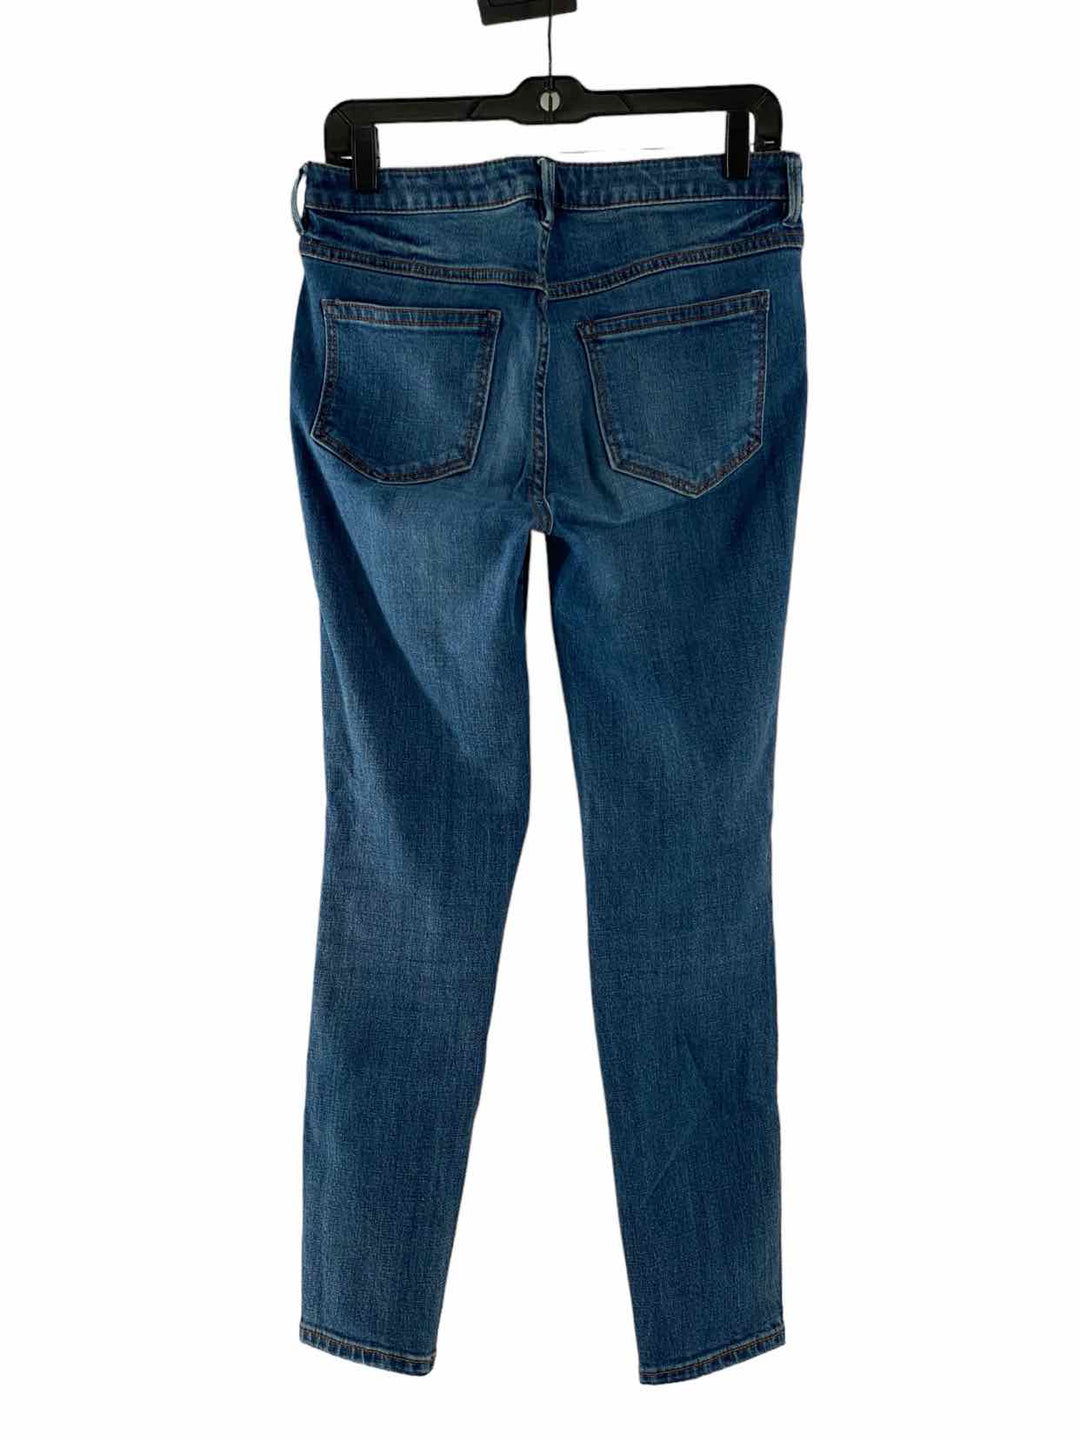 Free People Size 28W Jeans